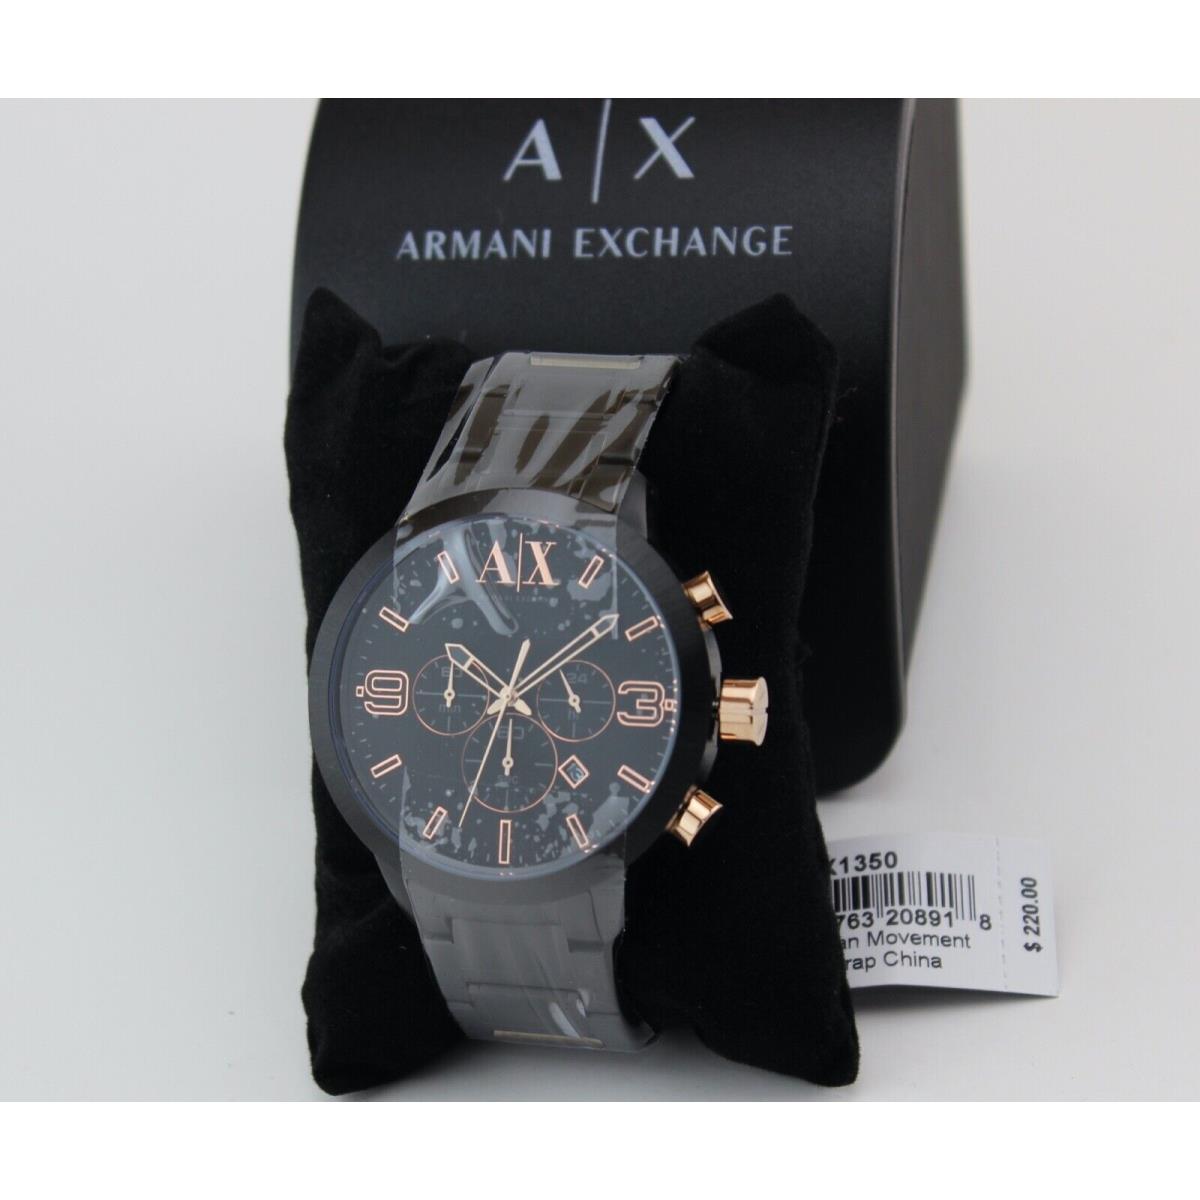 Armani Exchange Atlc クロノグラフ ブラックダイアル ブラックイオン